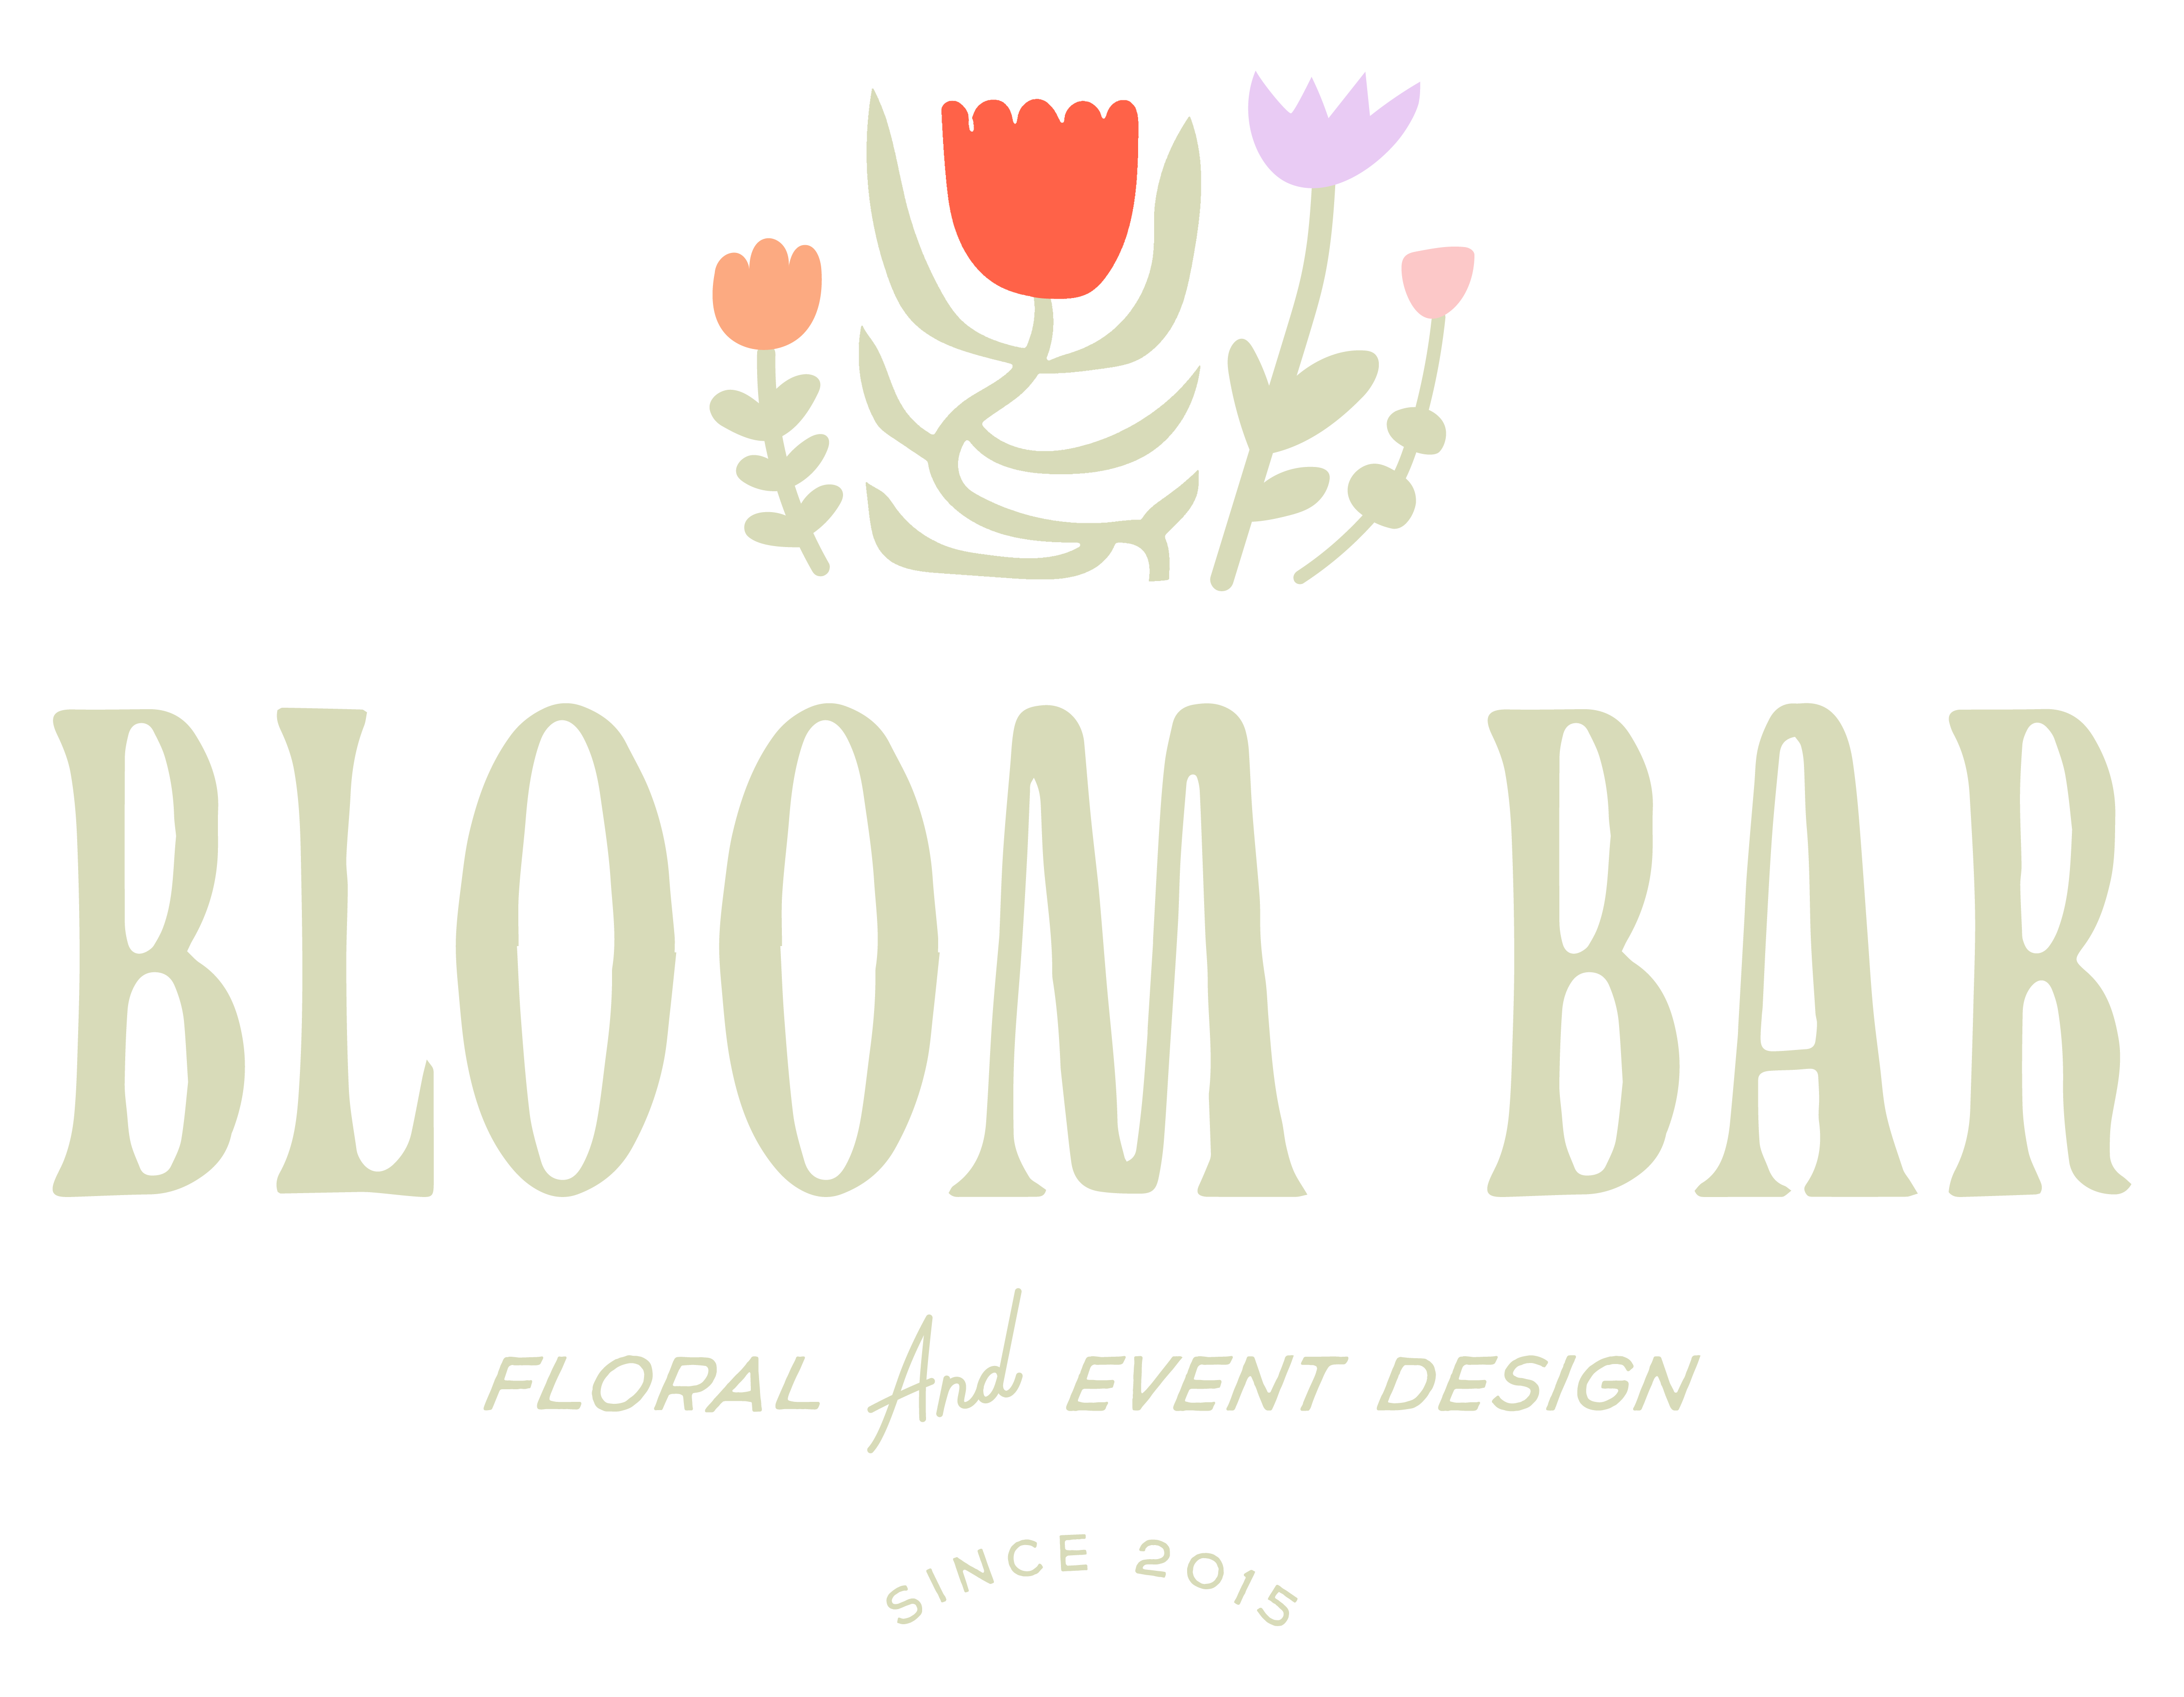 Bloom Bar Flower logo